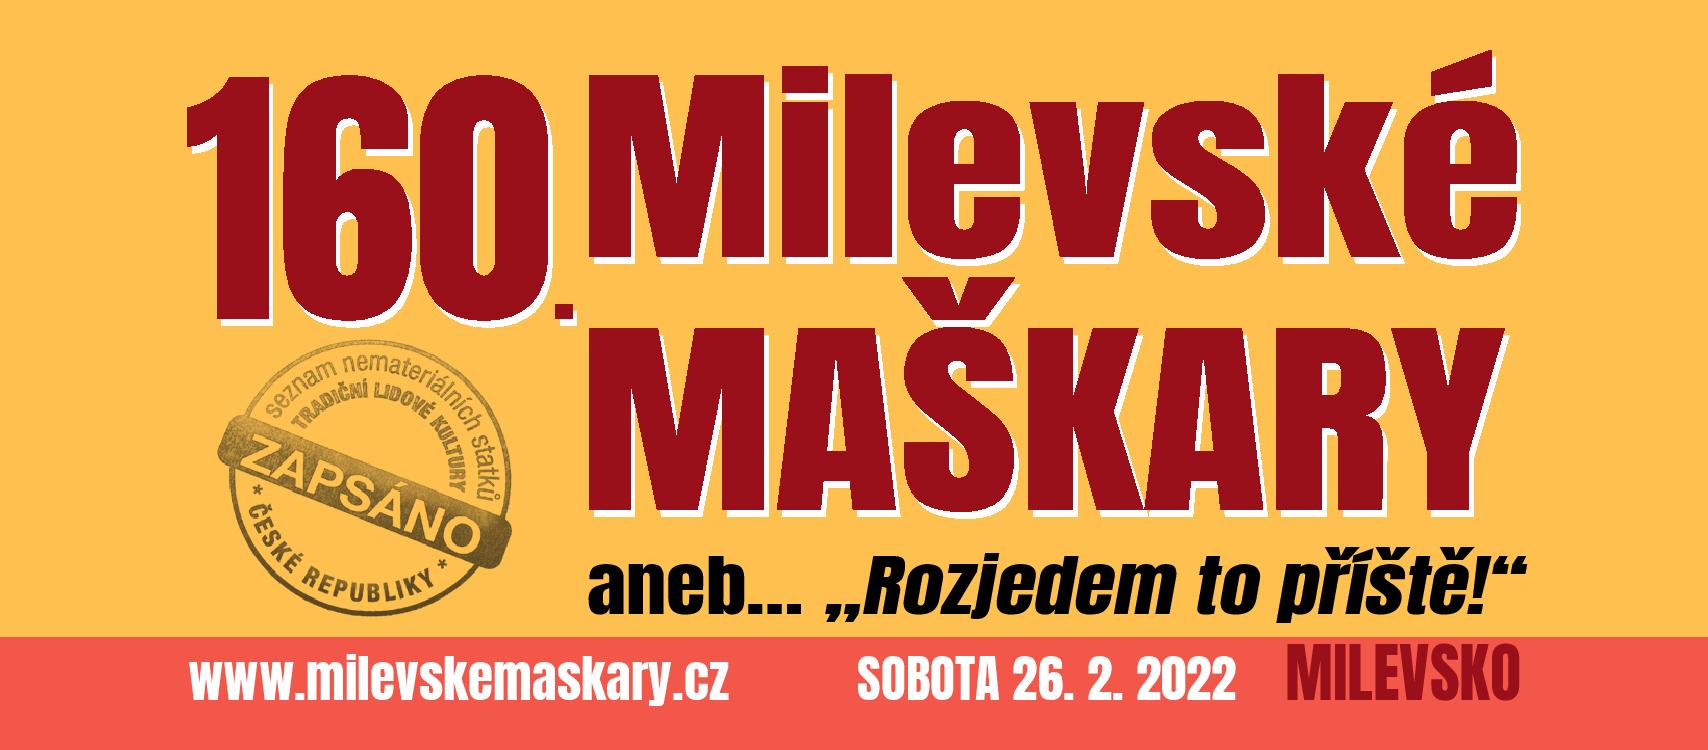 Plakát Milevské maškary 